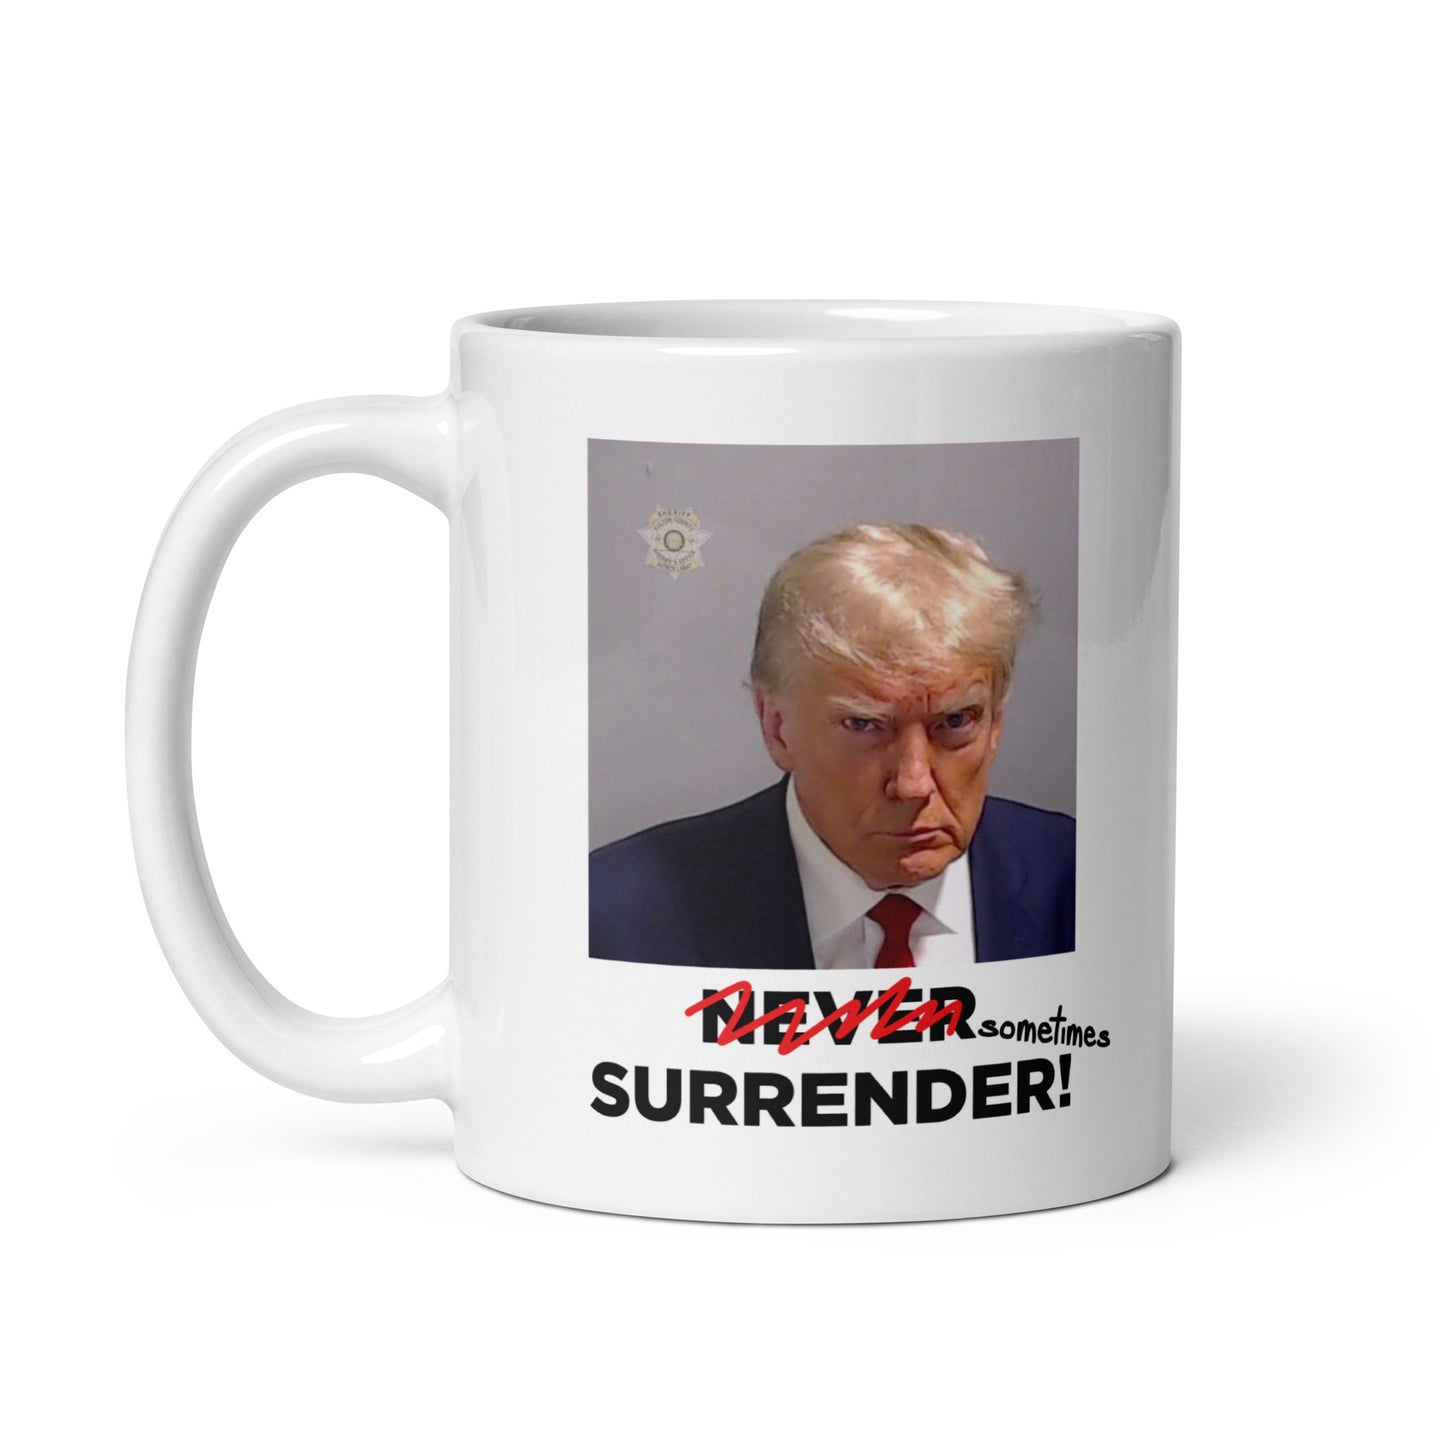 Sometimes Surrender (Trump Mugshot) mug